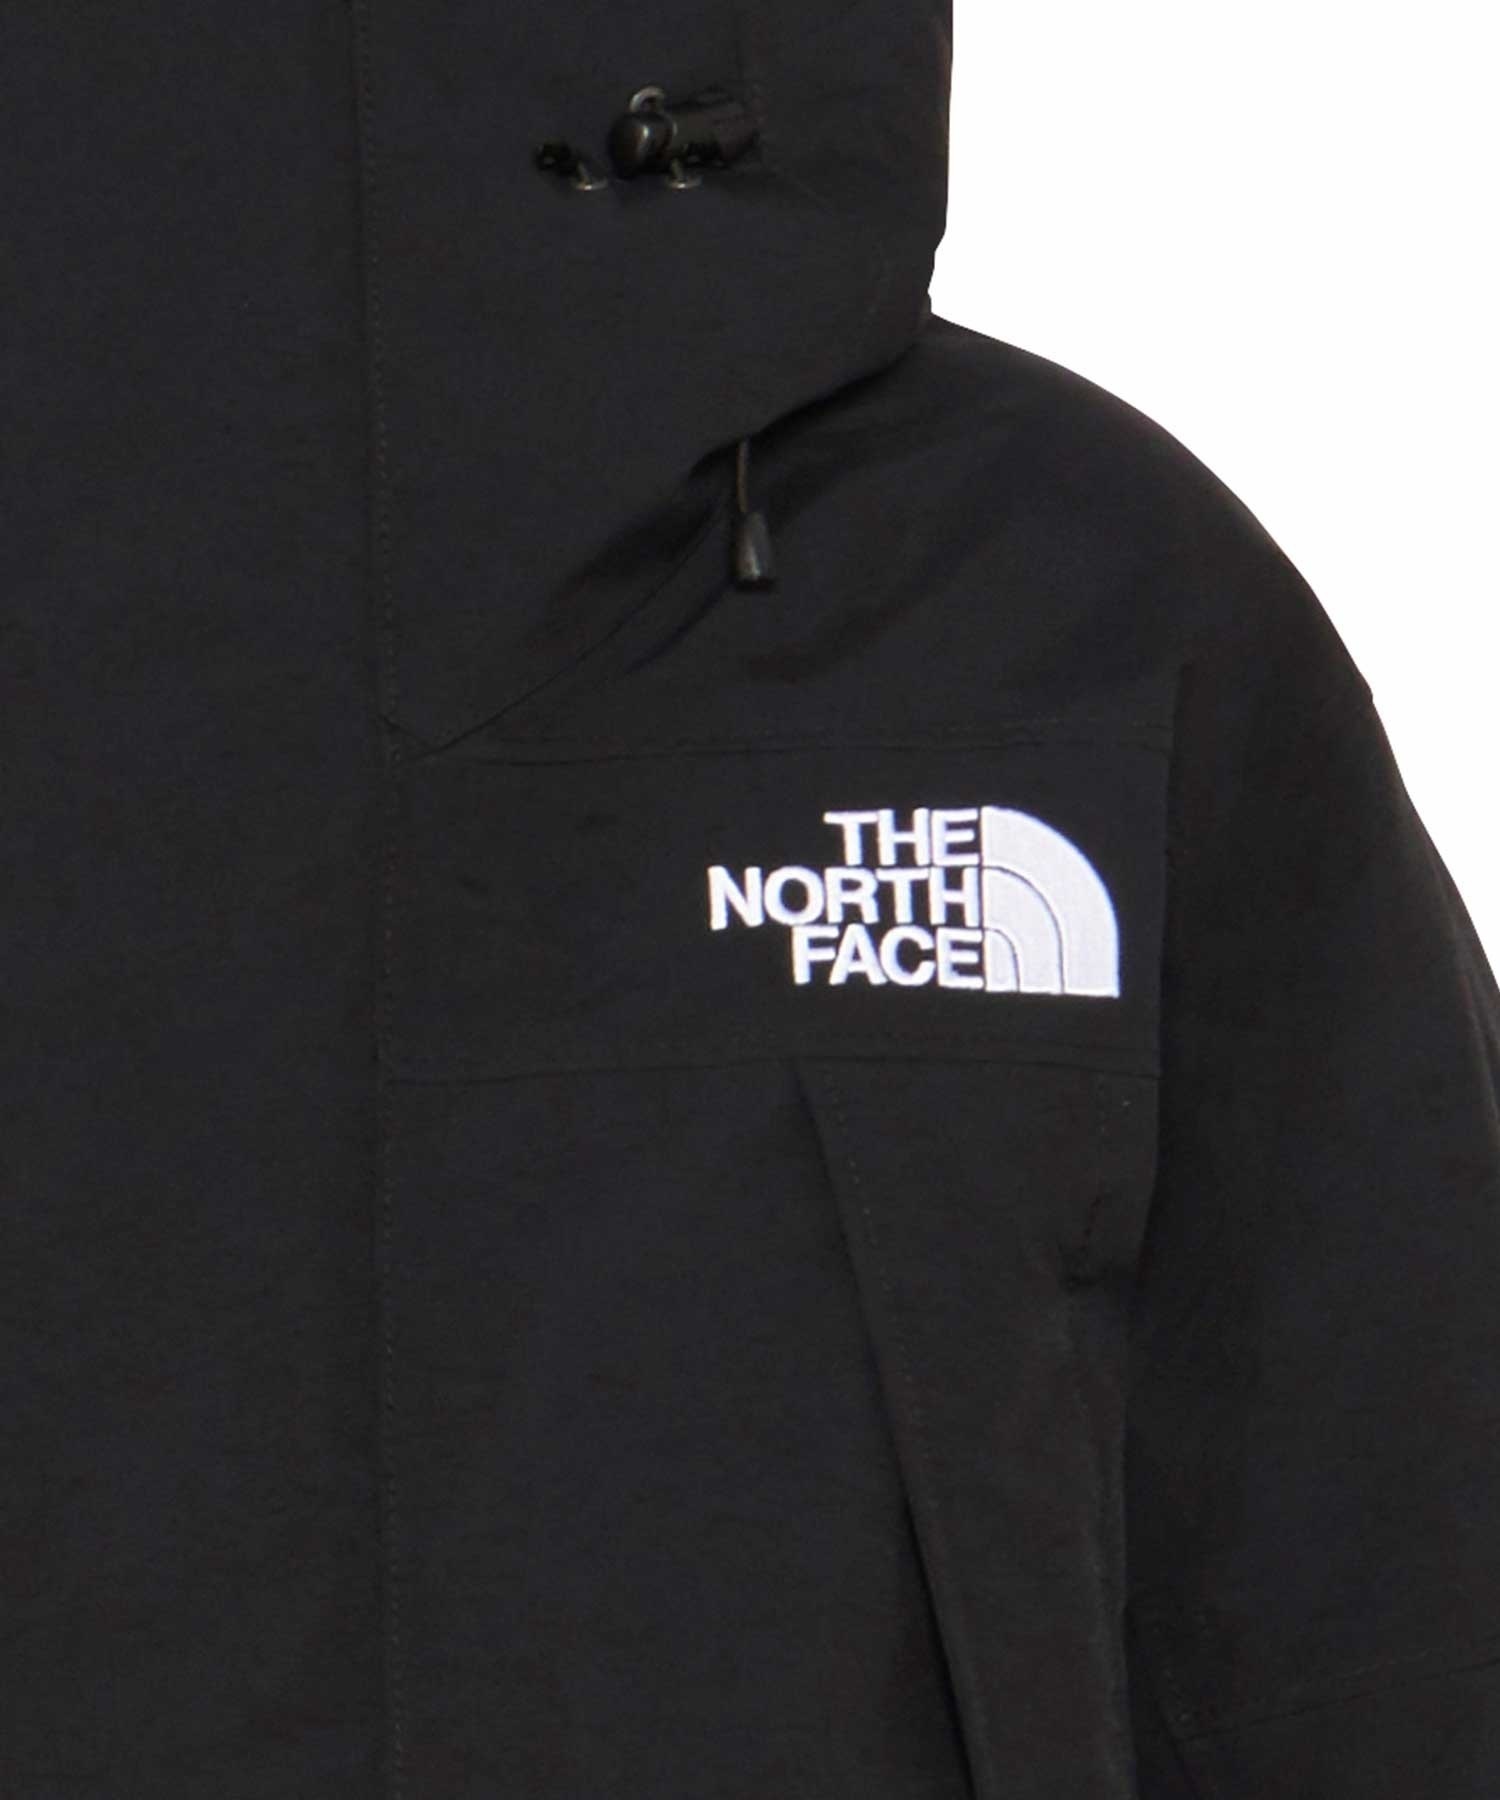 THE NORTH FACE/ザ・ノース・フェイス ANTARCTICA PARKA アンタークティカパーカ メンズ ダウンジャケット GORE-TEX 防水 ND92342(K-XS)